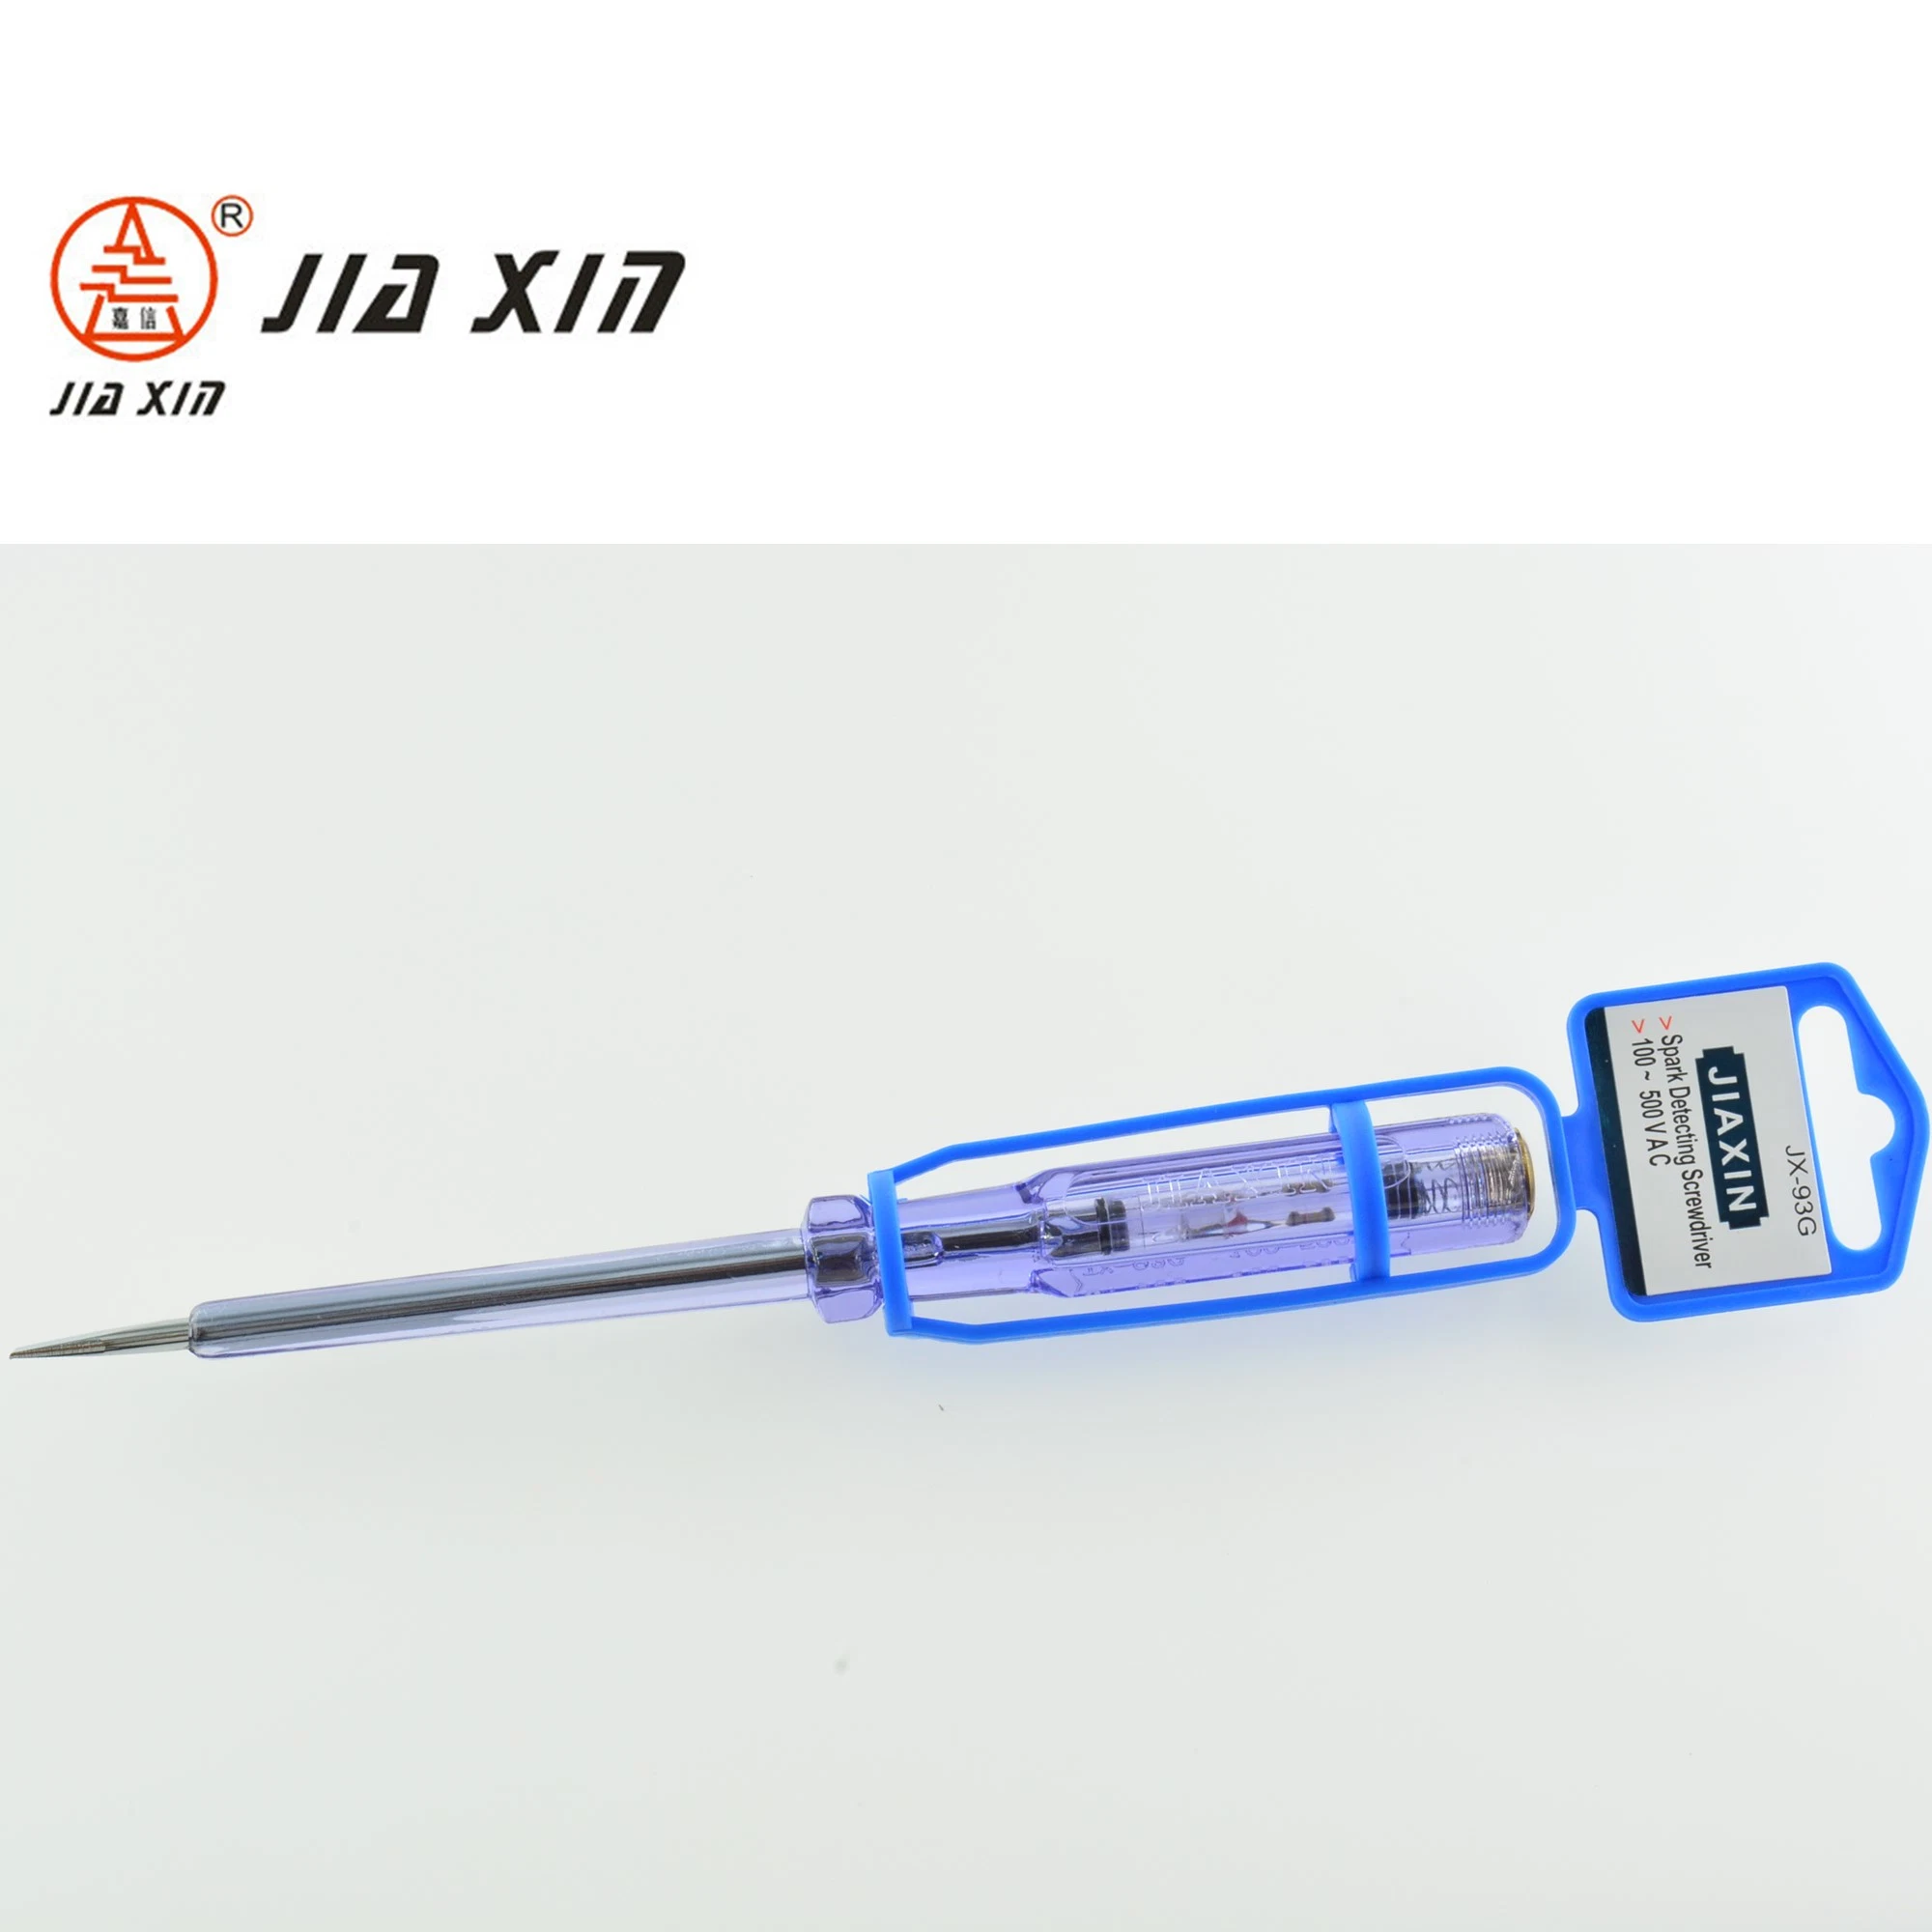 100V-500V 185mm Multi-Function Voltage Screwdriver Electric Test Pen